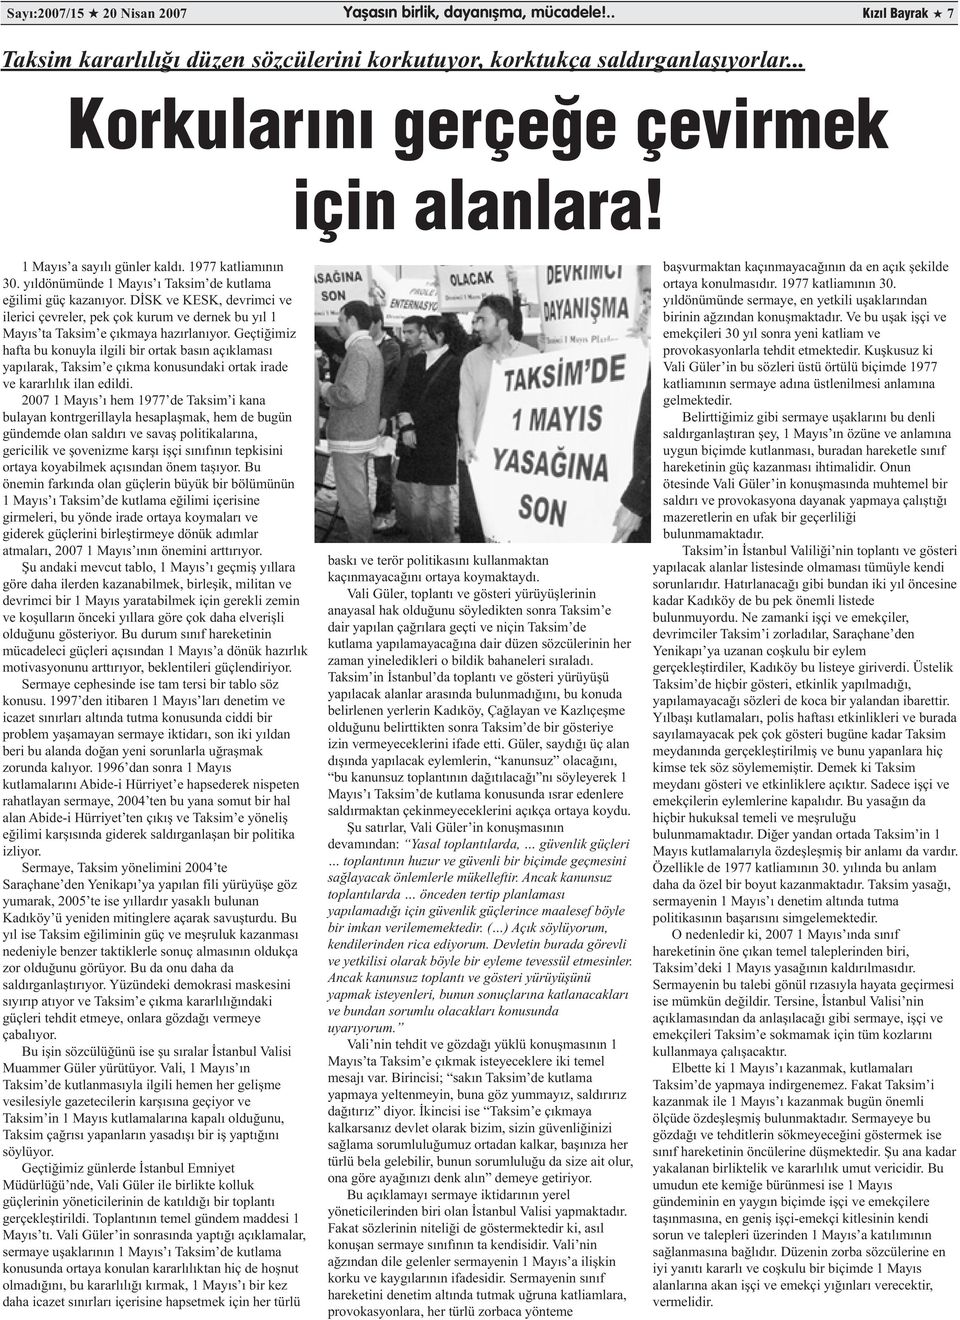 DİSK ve KESK, devrimci ve ilerici çevreler, pek çok kurum ve dernek bu yıl 1 Mayıs ta Taksim e çıkmaya hazırlanıyor.